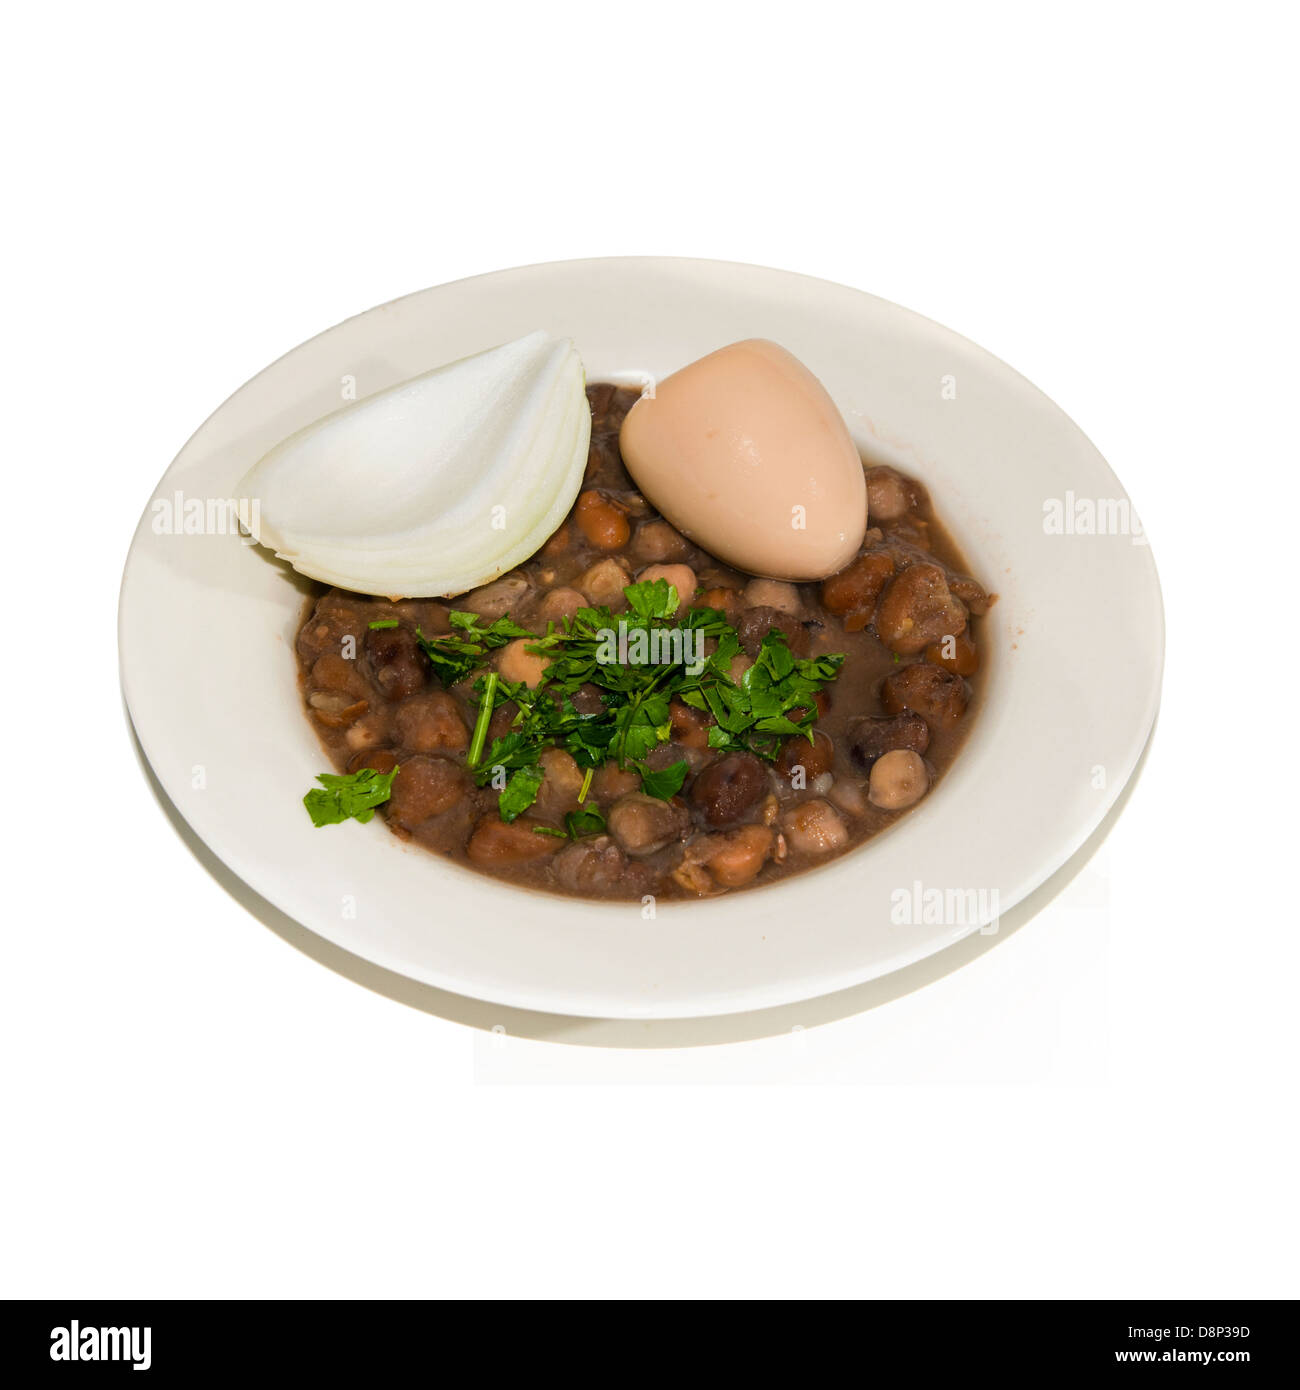 Ful medames un egiziano prima colazione piatto di cottura faba beans mangiato con pane o pita e cipolla spesso servito con uovo sodo Foto Stock